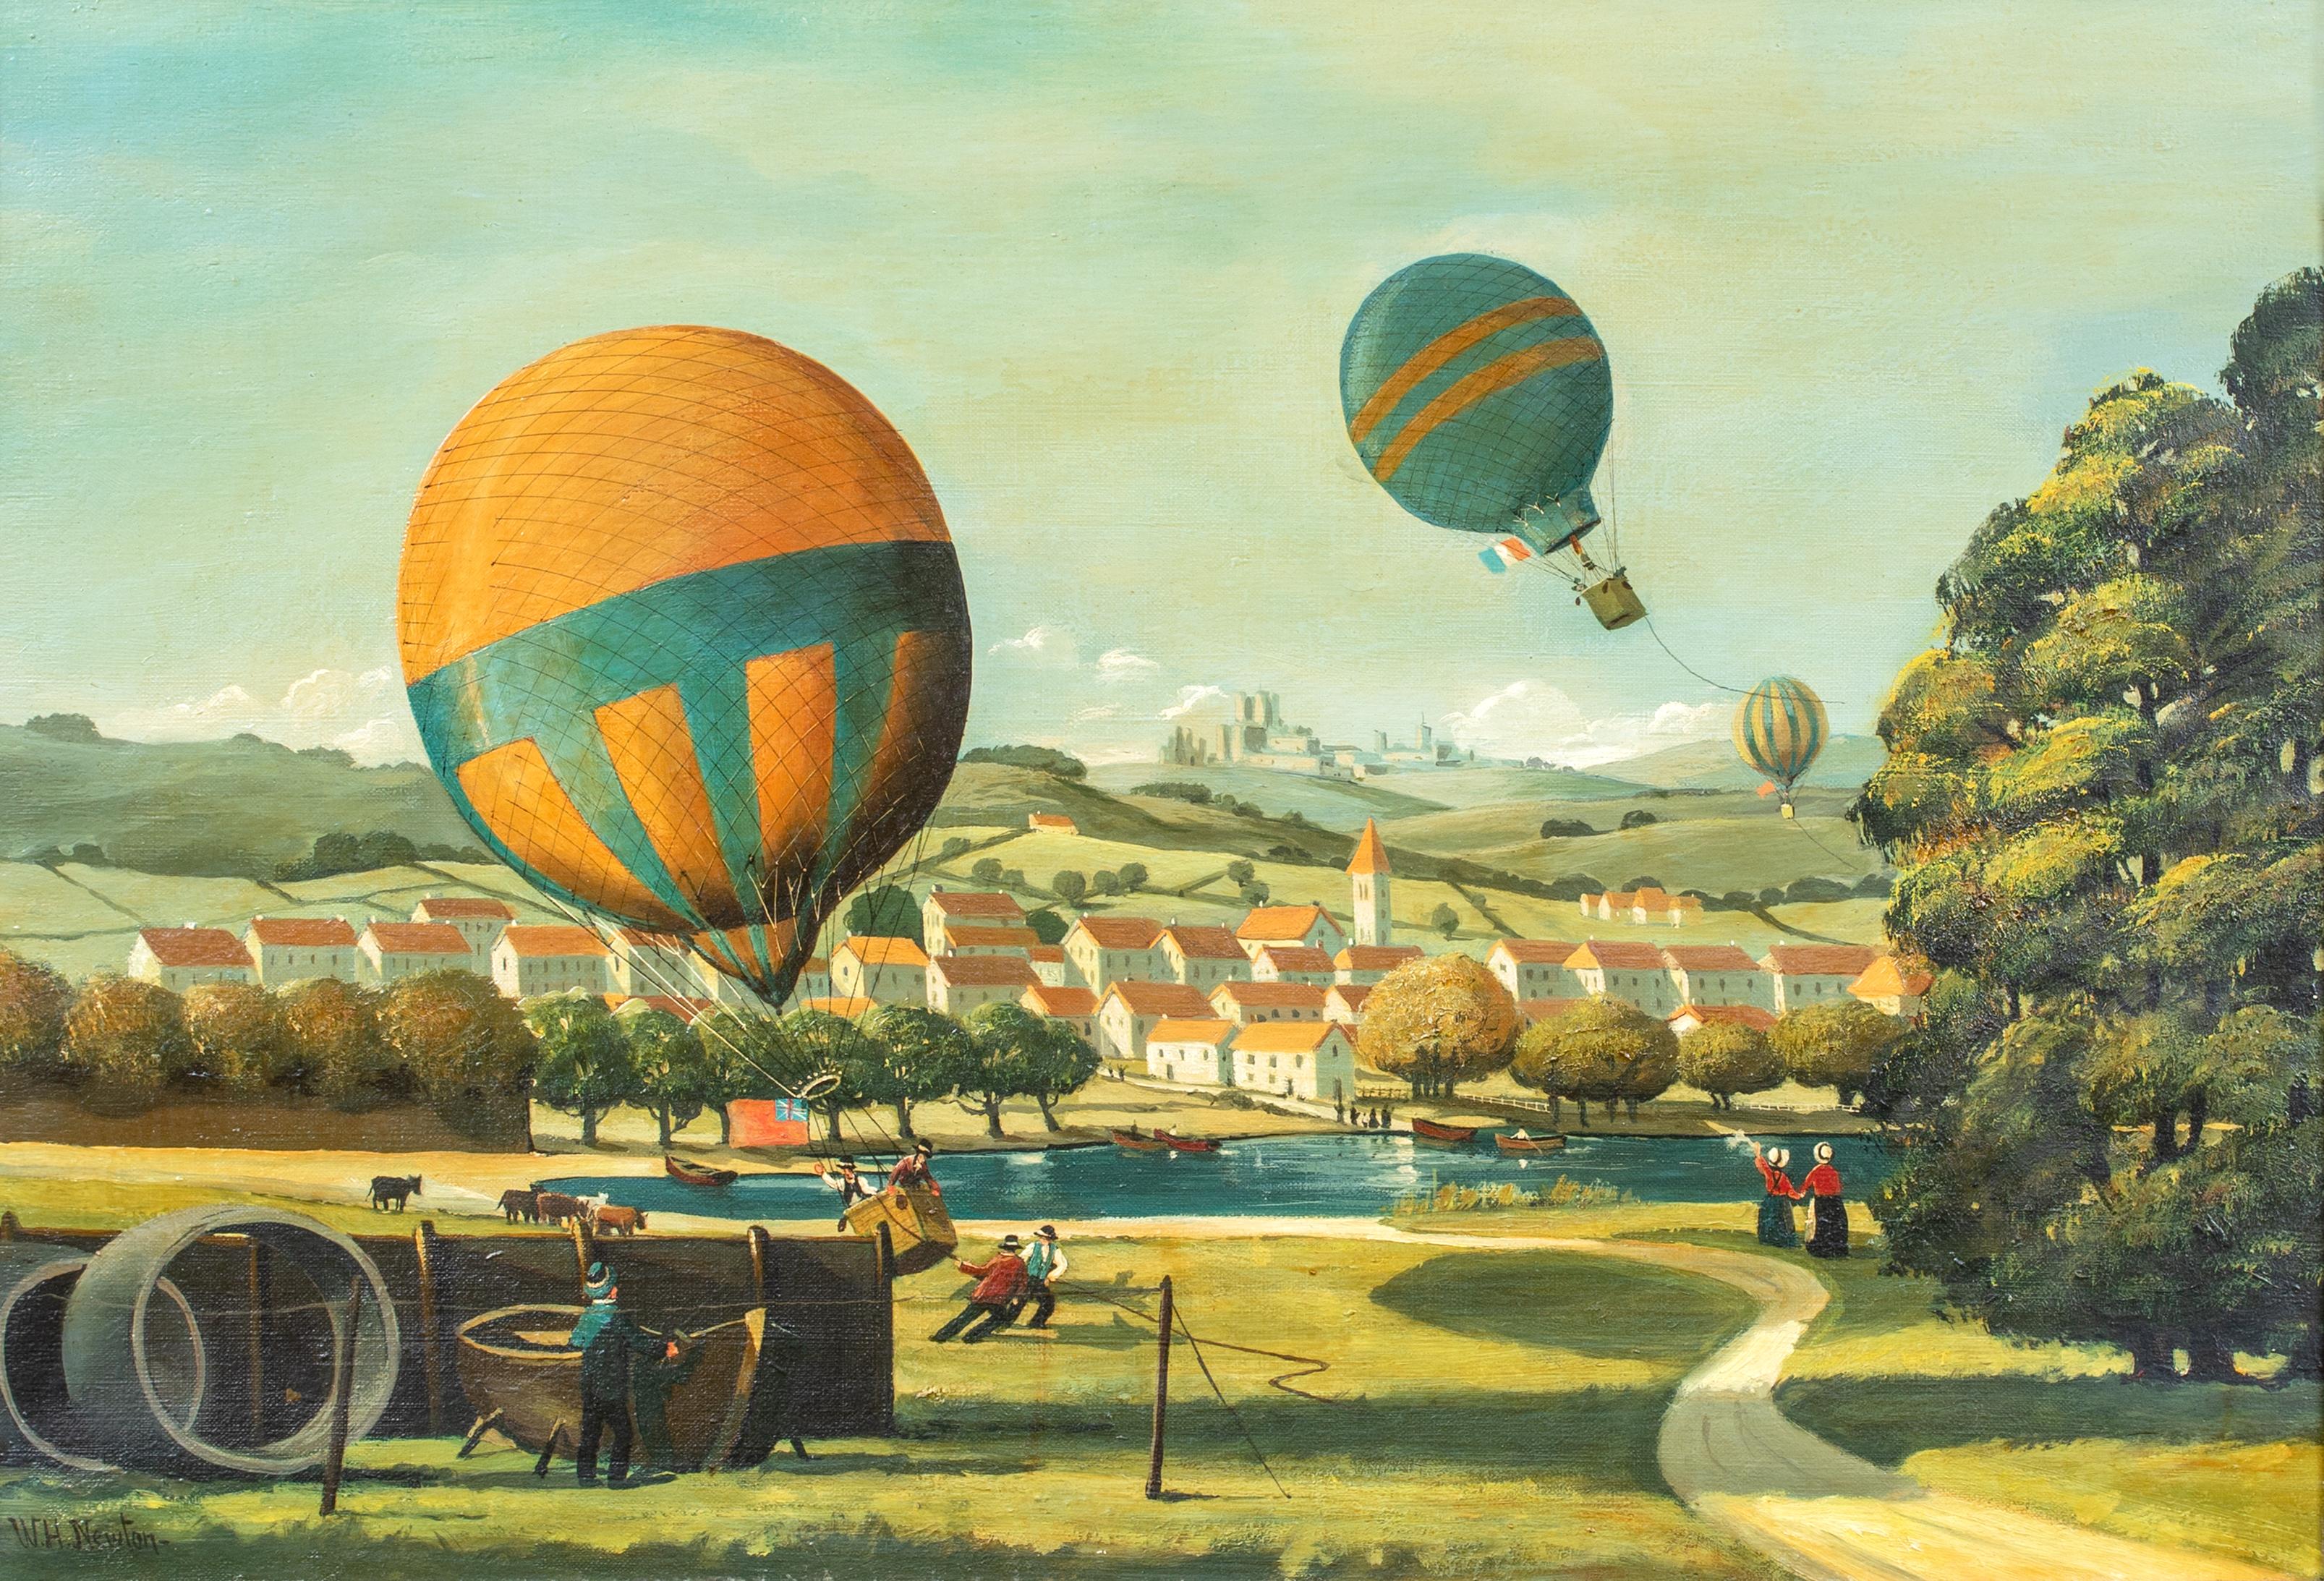 Landscape Painting Unknown - Paysage de course de ballons d'aviation aérienne, vers 1900  École d'Angleterre - signée W H NEWTON